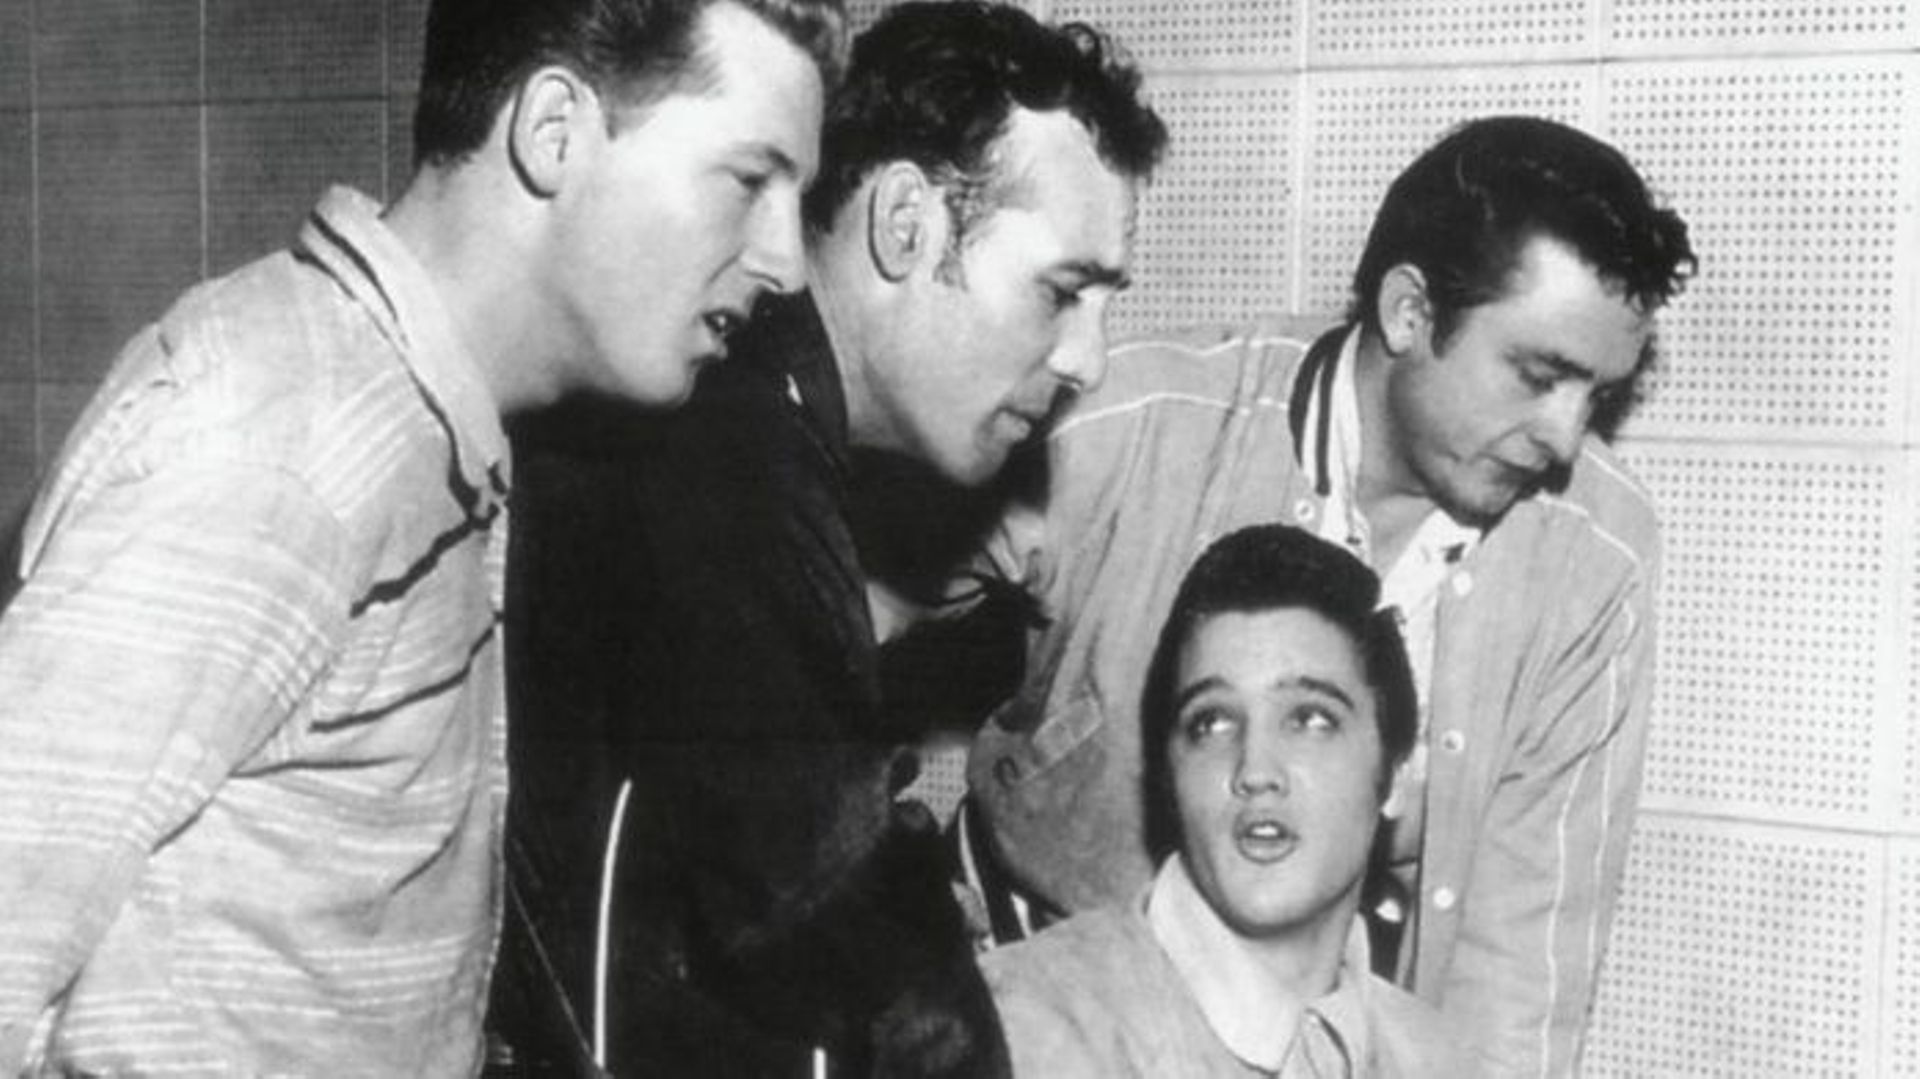 Le "Million Dollar Quartet" avec Elvis Presley, Johnny Cash, Jerry Lee Lewis et Carl Perkins